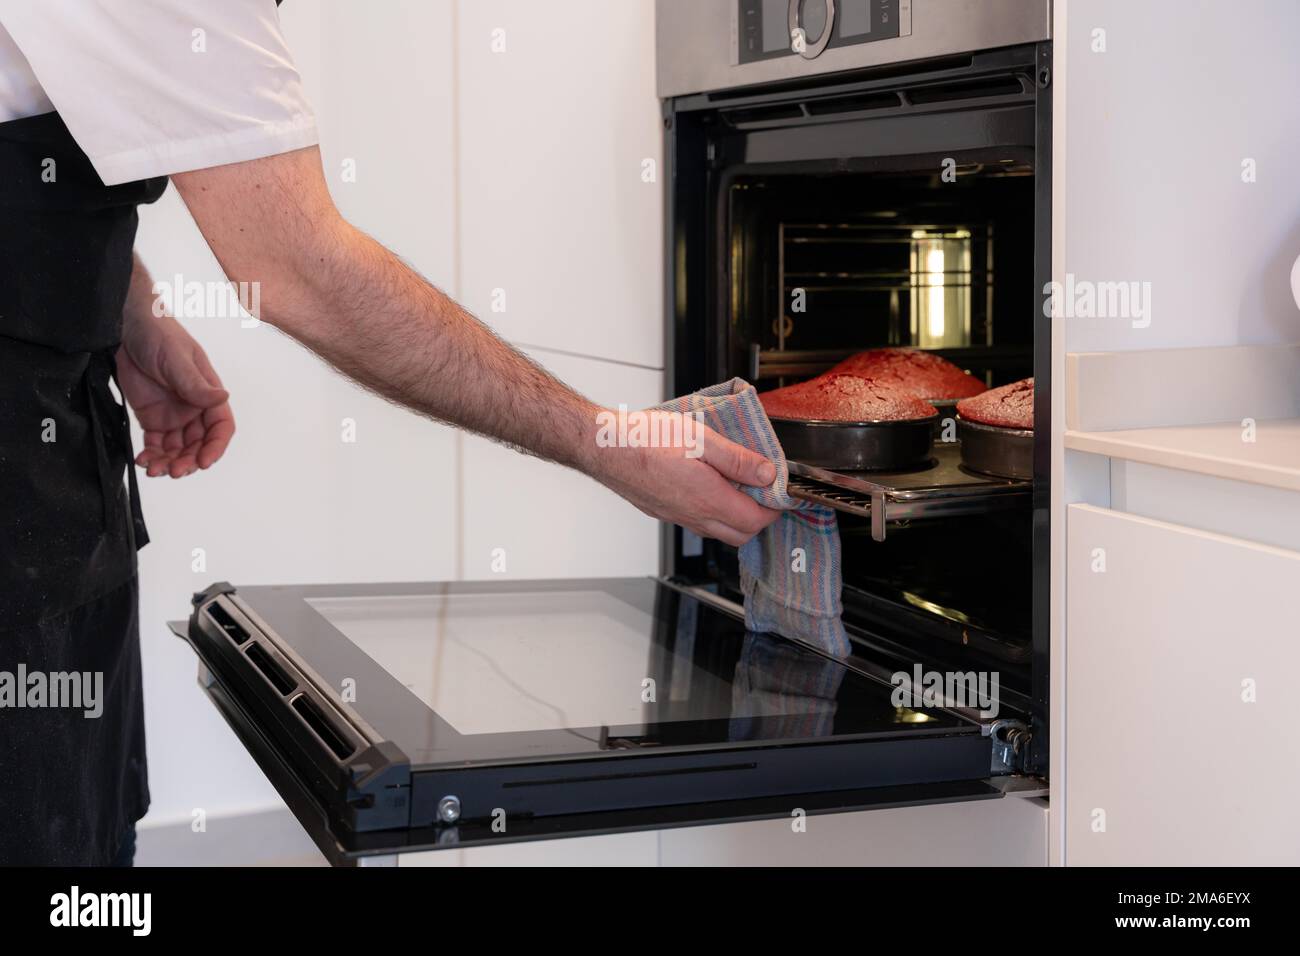 Un boulanger d'homme cuit un gâteau de velours rouge à la maison, en  préparant le gâteau en ajoutant de l'huile dans le robot de cuisine, le  travail à la maison Photo Stock -